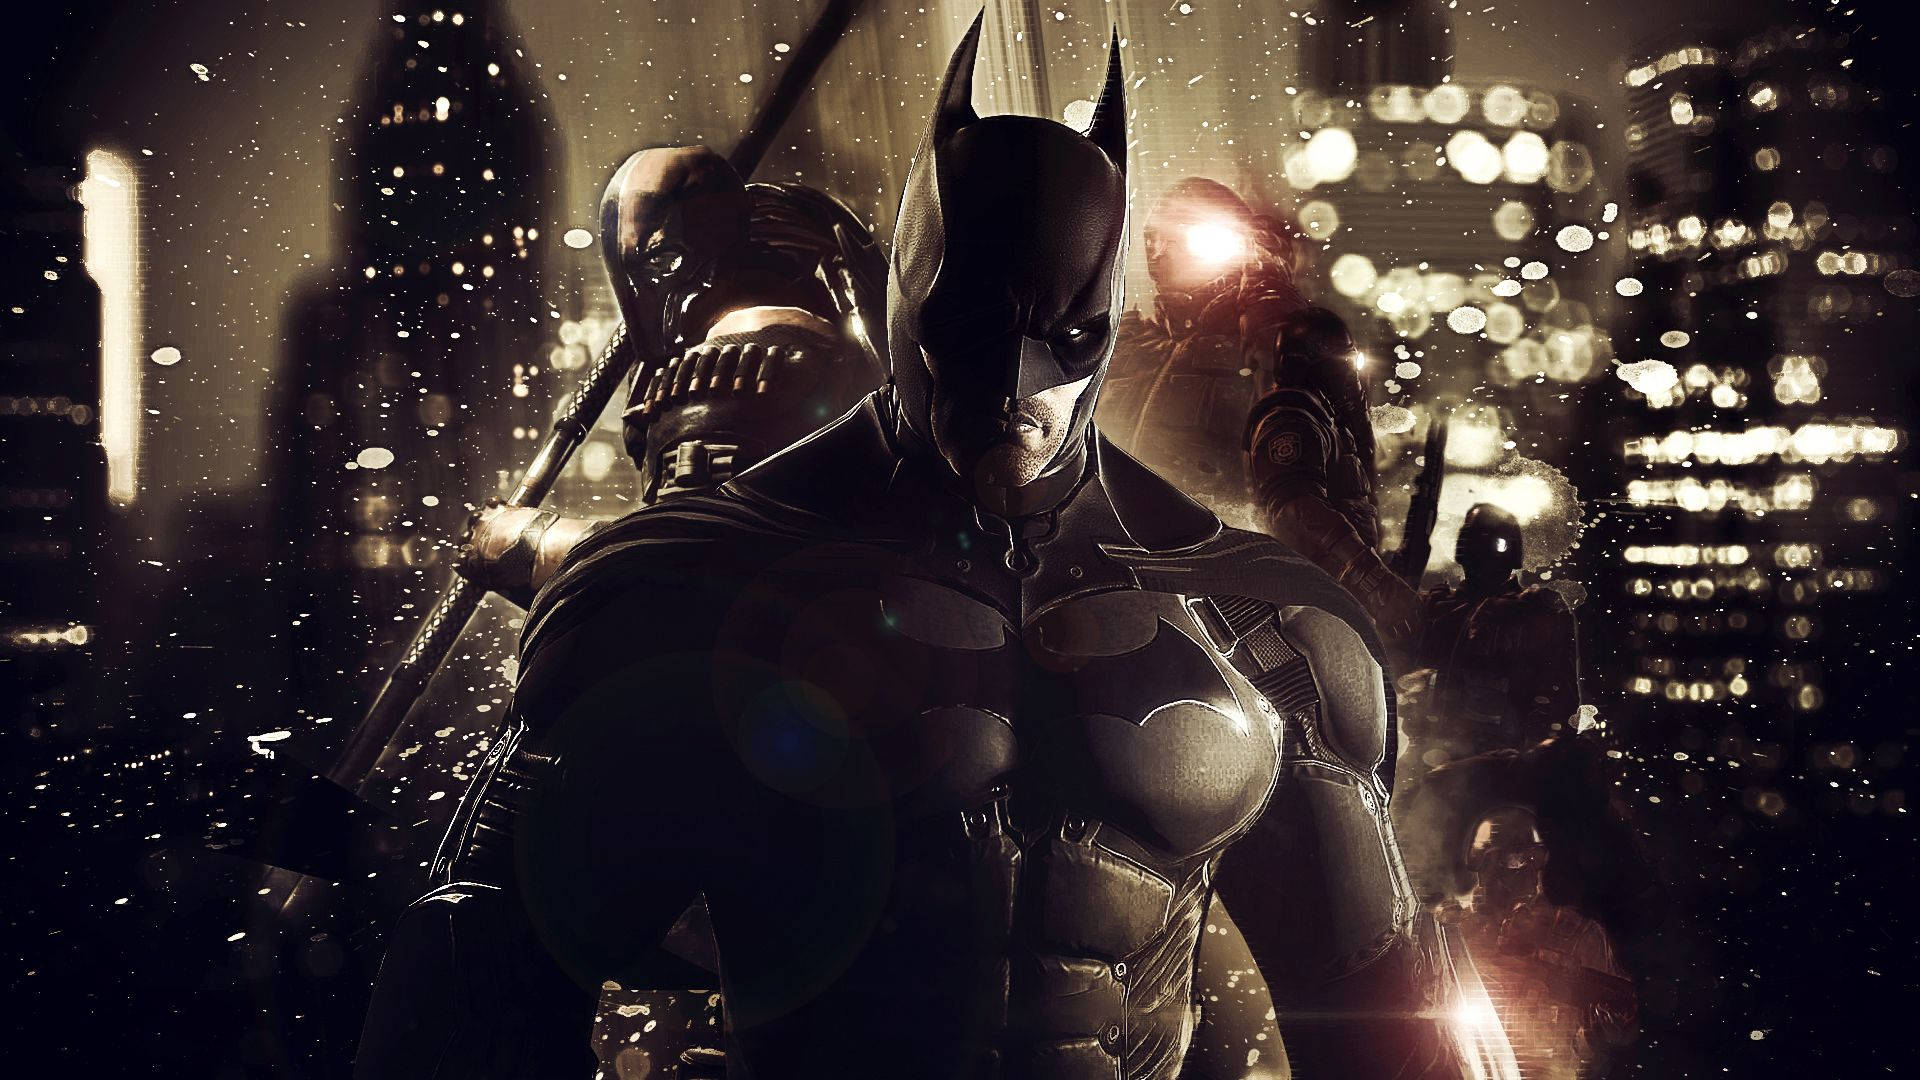 Melhorjogo 3d De Batman: Arkham Knight. Papel de Parede